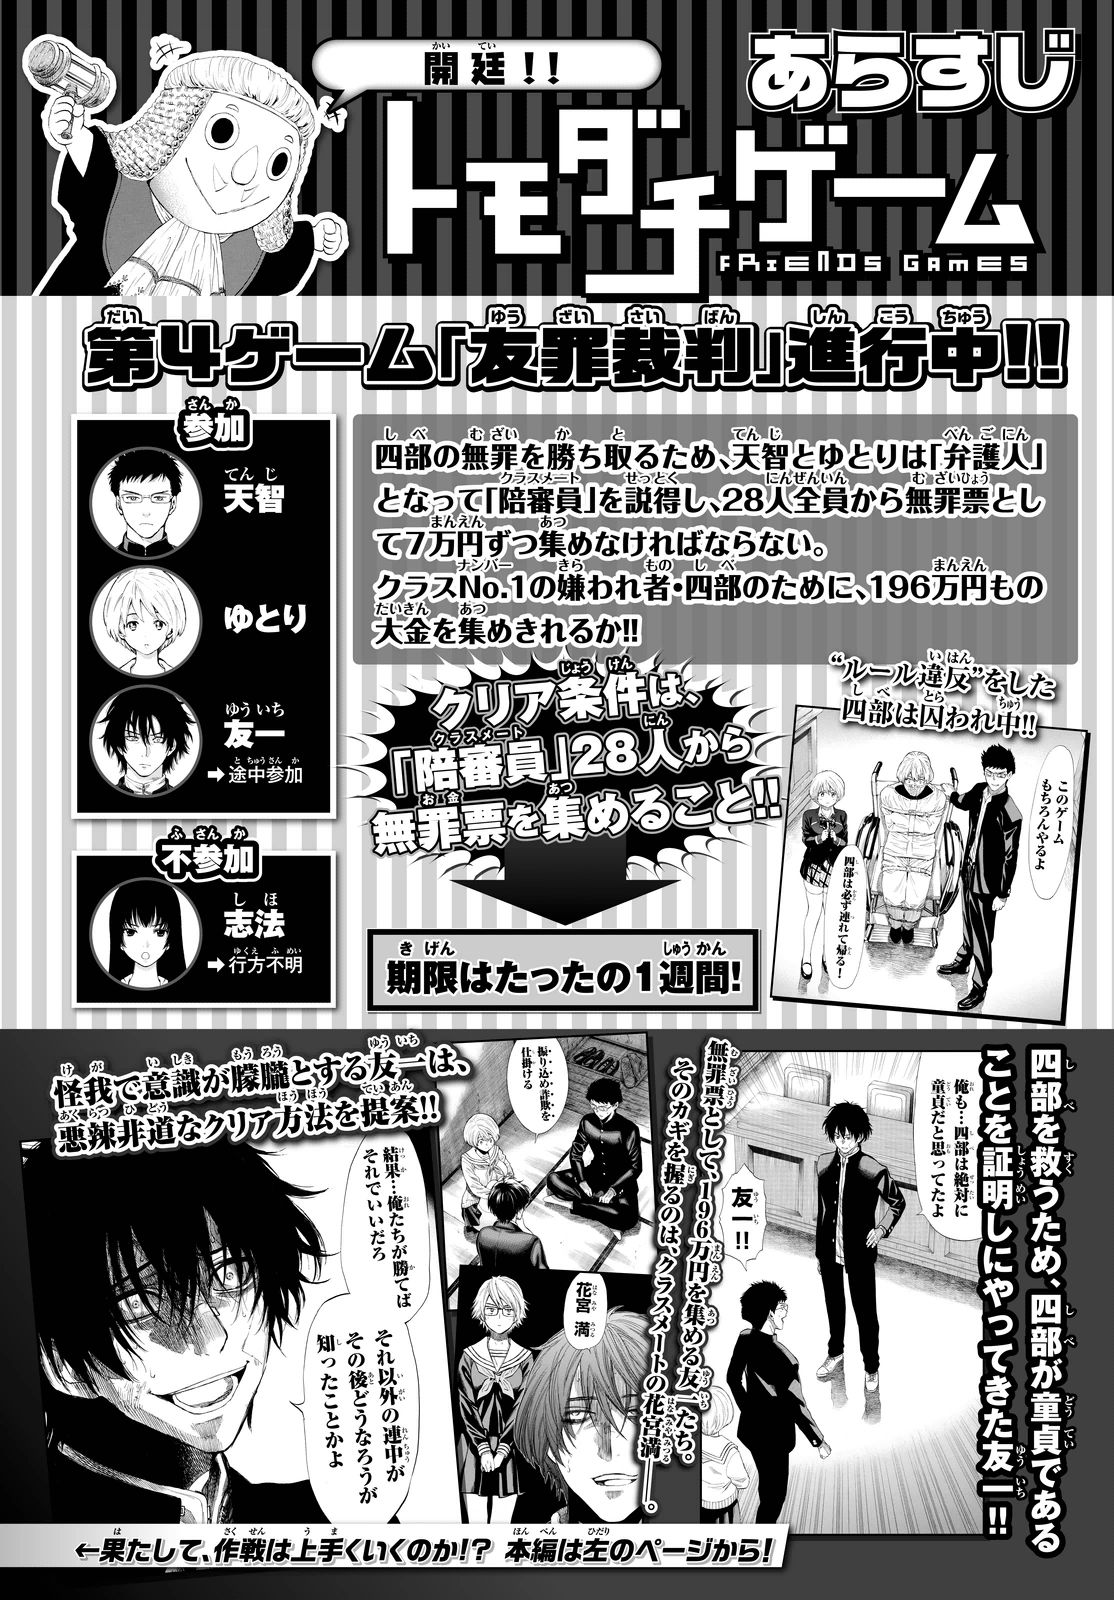 トモダチゲーム 27話 Manga Townまんがタウン まんがまとめ 無料コミック漫画 ネタバレ